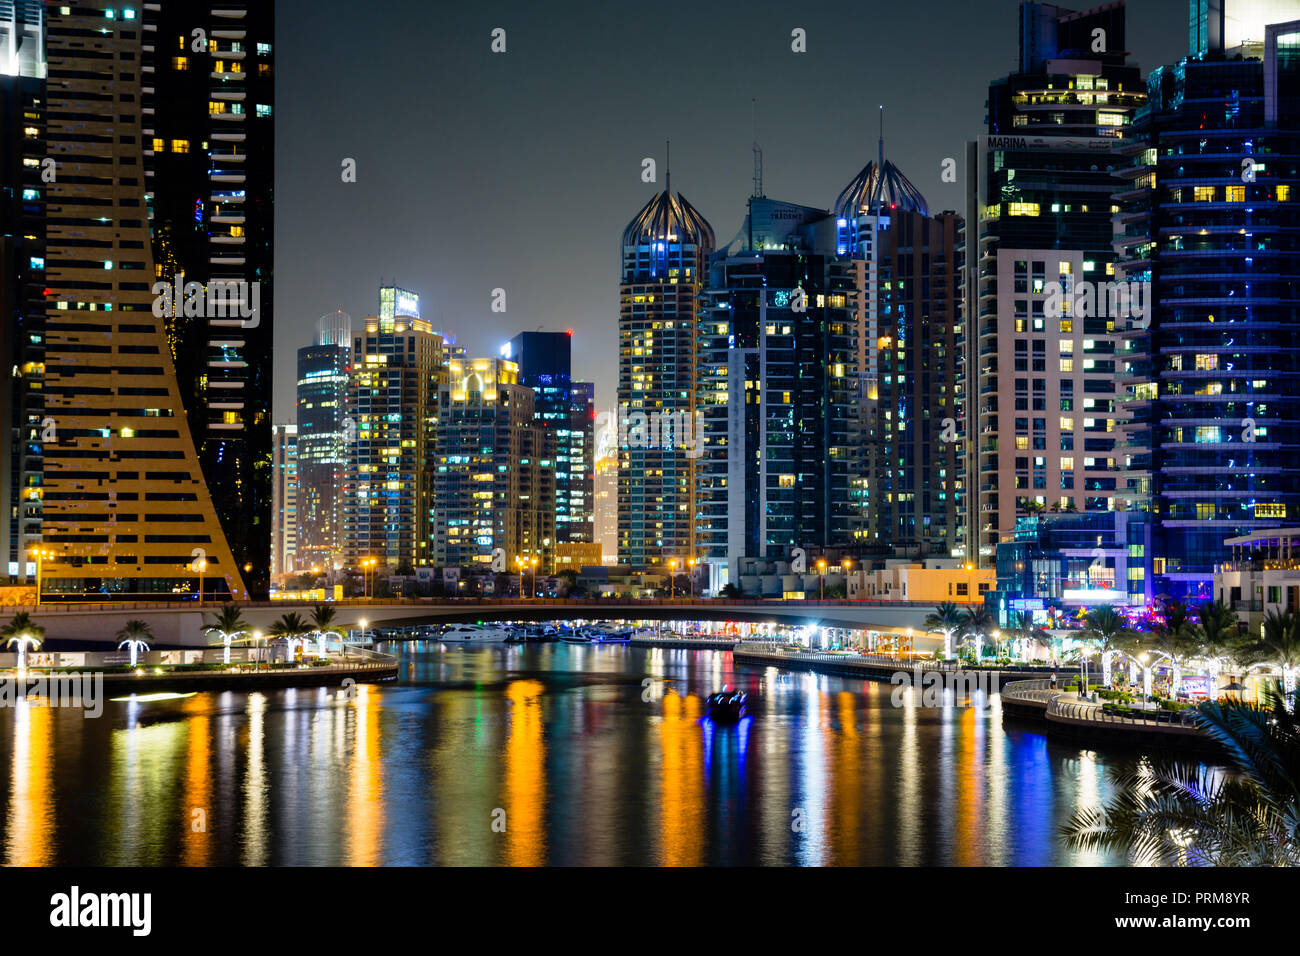 Dubai marina moderni grattacieli riflessi nell'acqua di notte Foto Stock